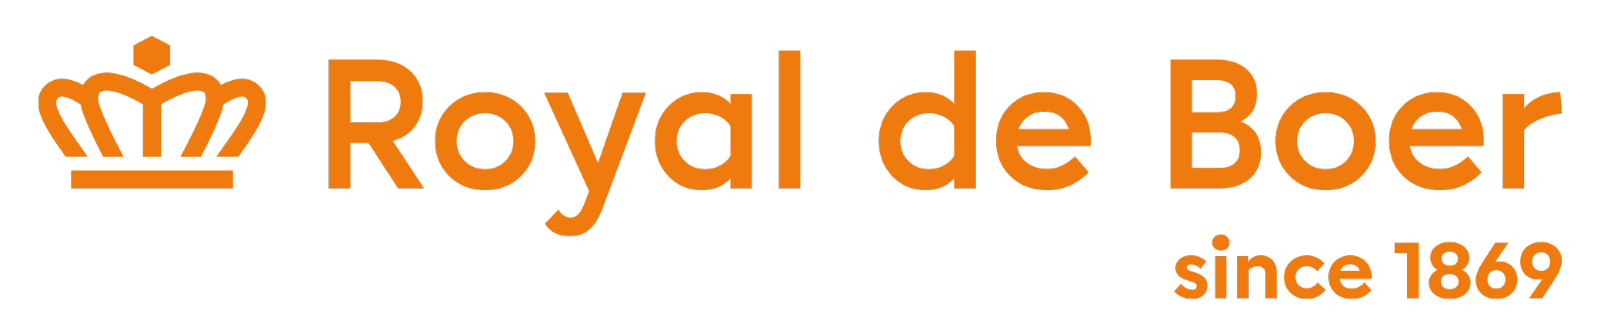 Royal de Boer Stalinrichtingen B.V. logo